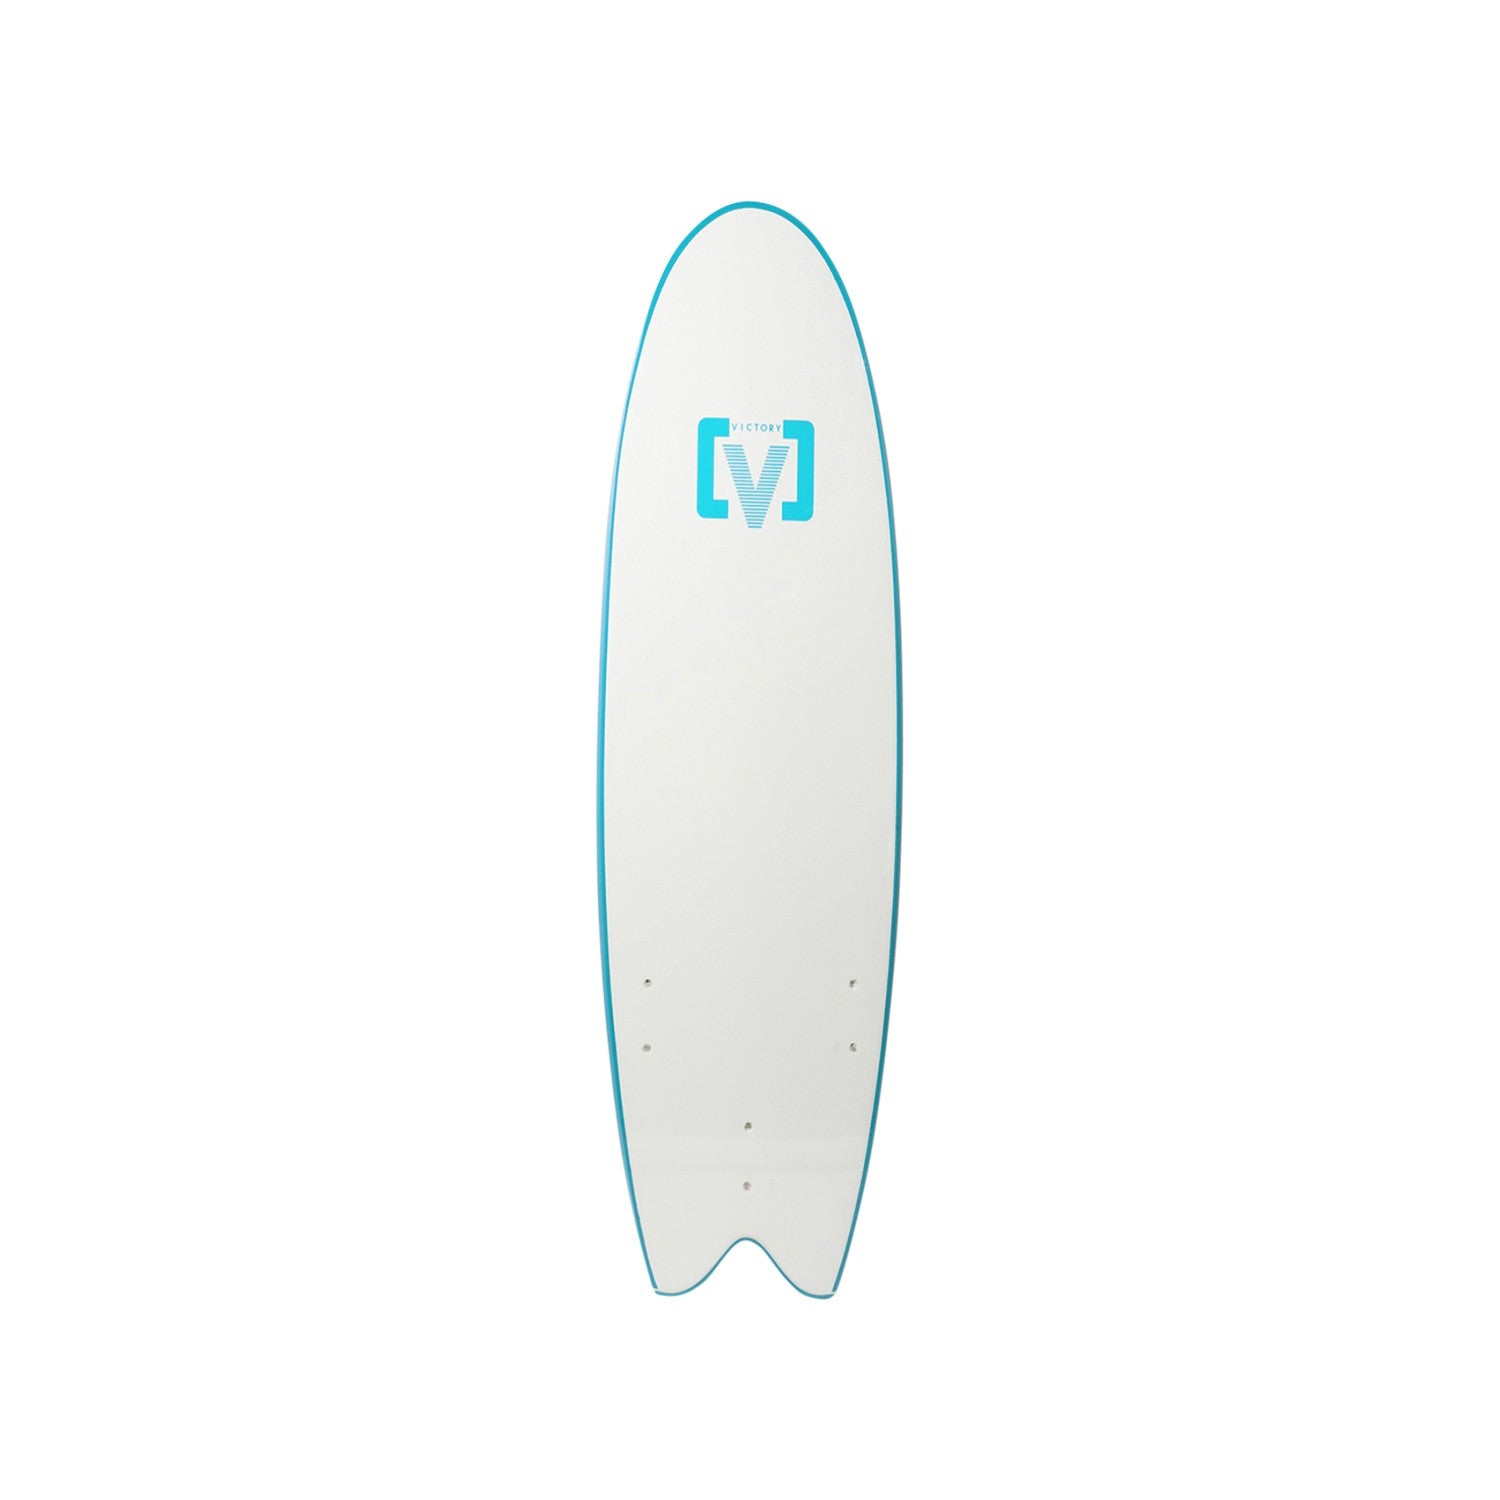 VICTORY - EPS Softboard - Foam Surfboard - Fish 6'6 - Light Blue